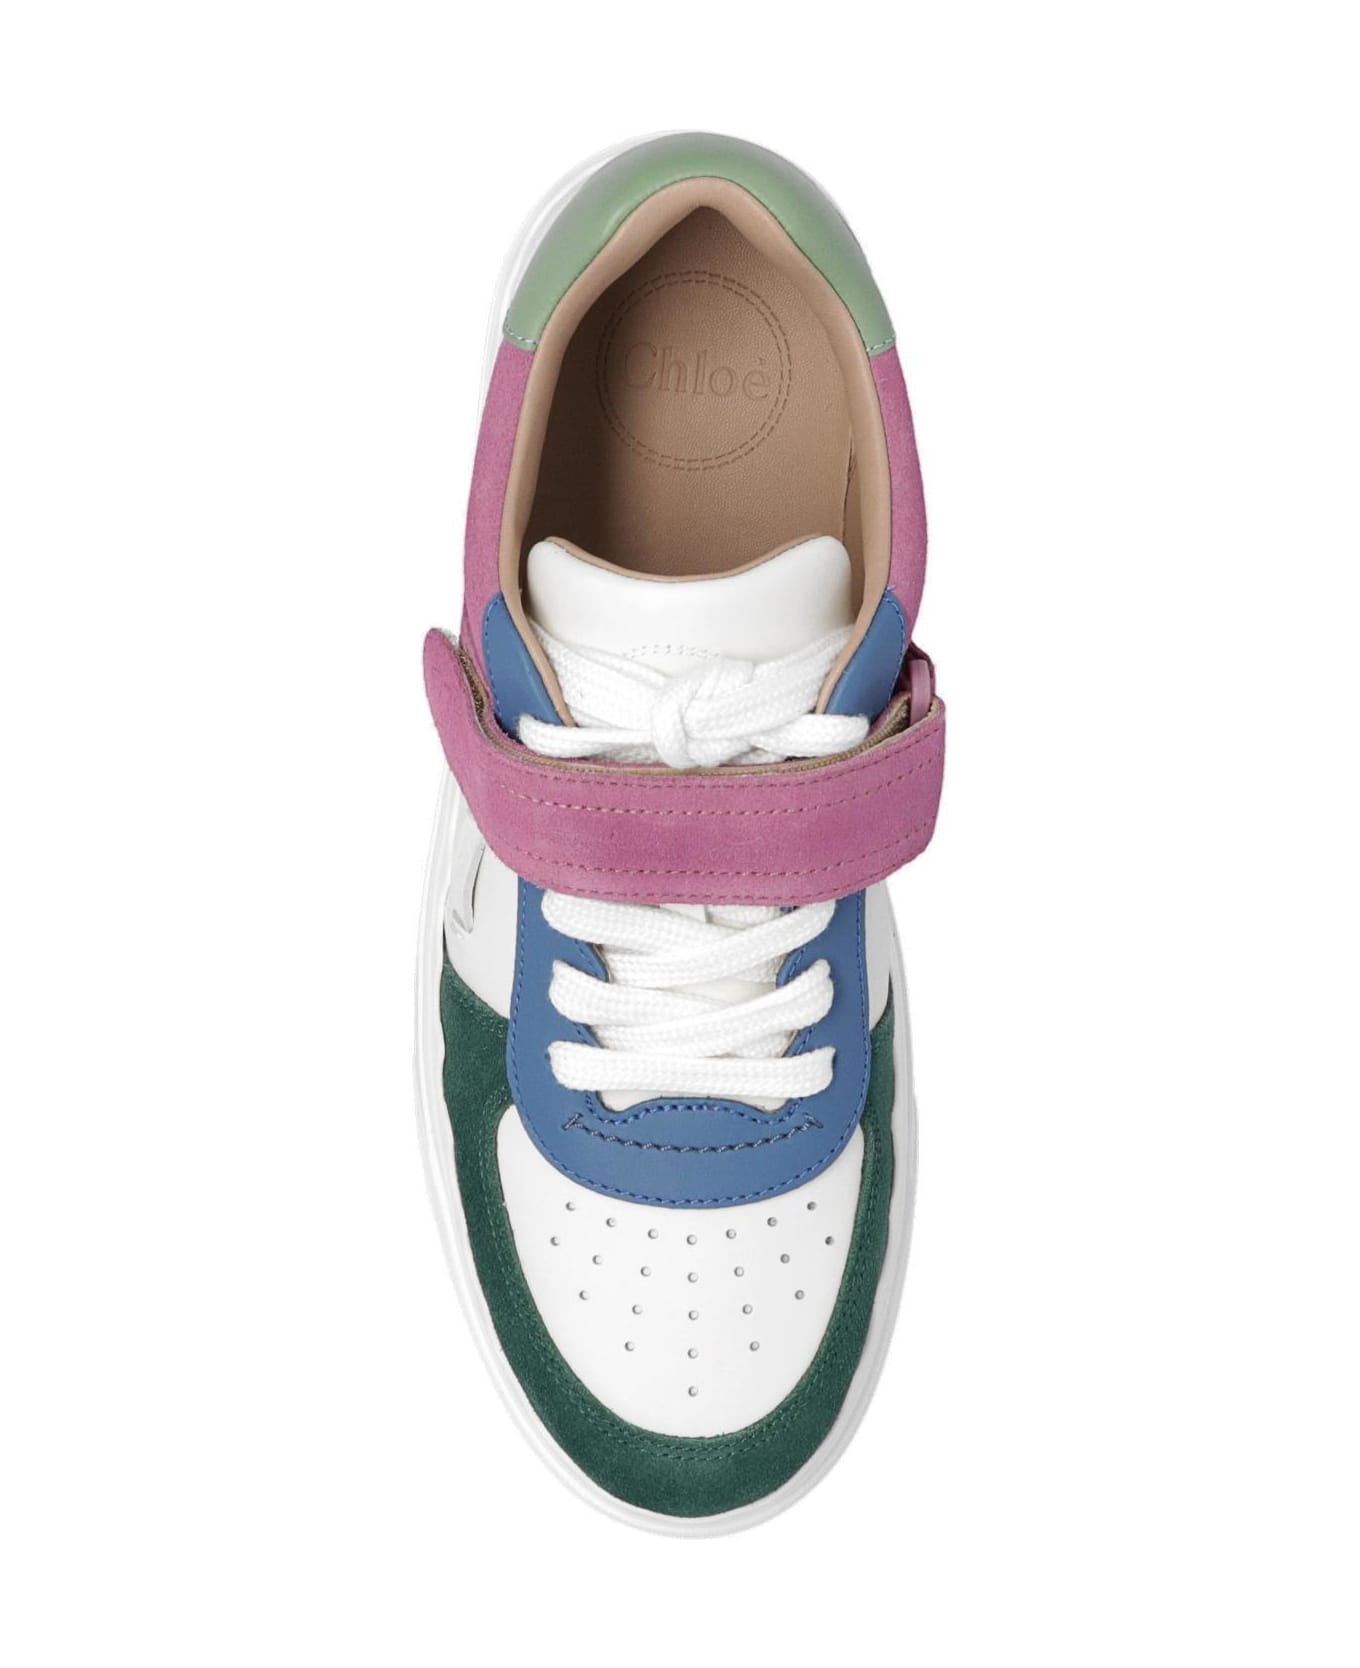 Chloé Lauren Low-top Sneakers - Creamy Lilac